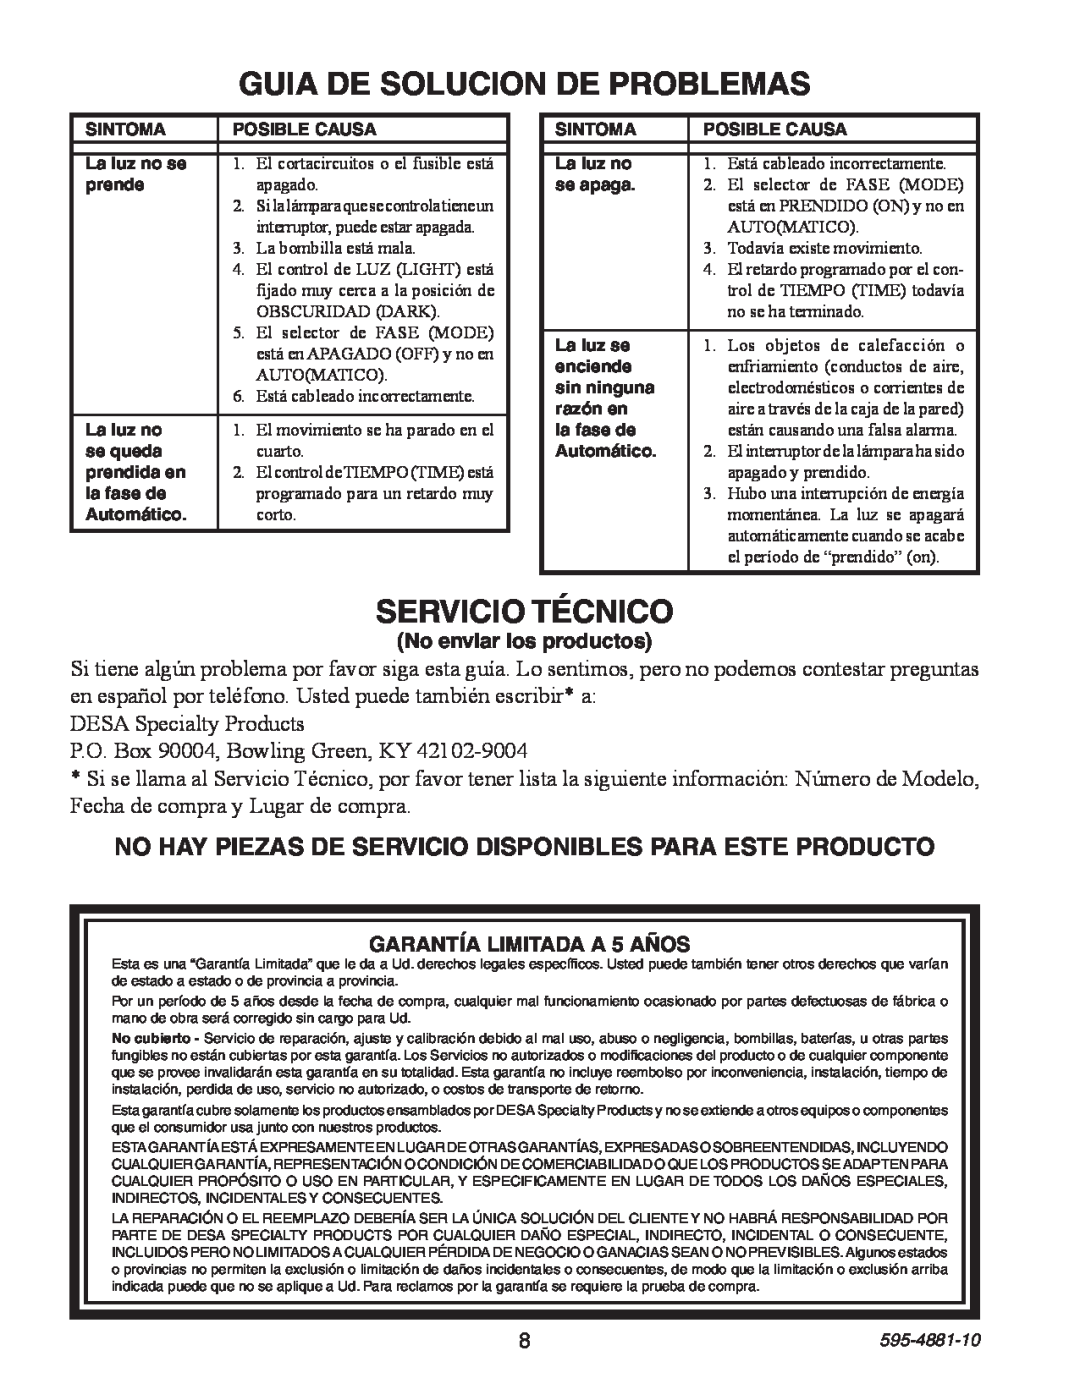 Heath Zenith SL-6105 manual Guia De Solucion De Problemas, Servicio Técnico, DESA Specialty Products, 595-4881-10 